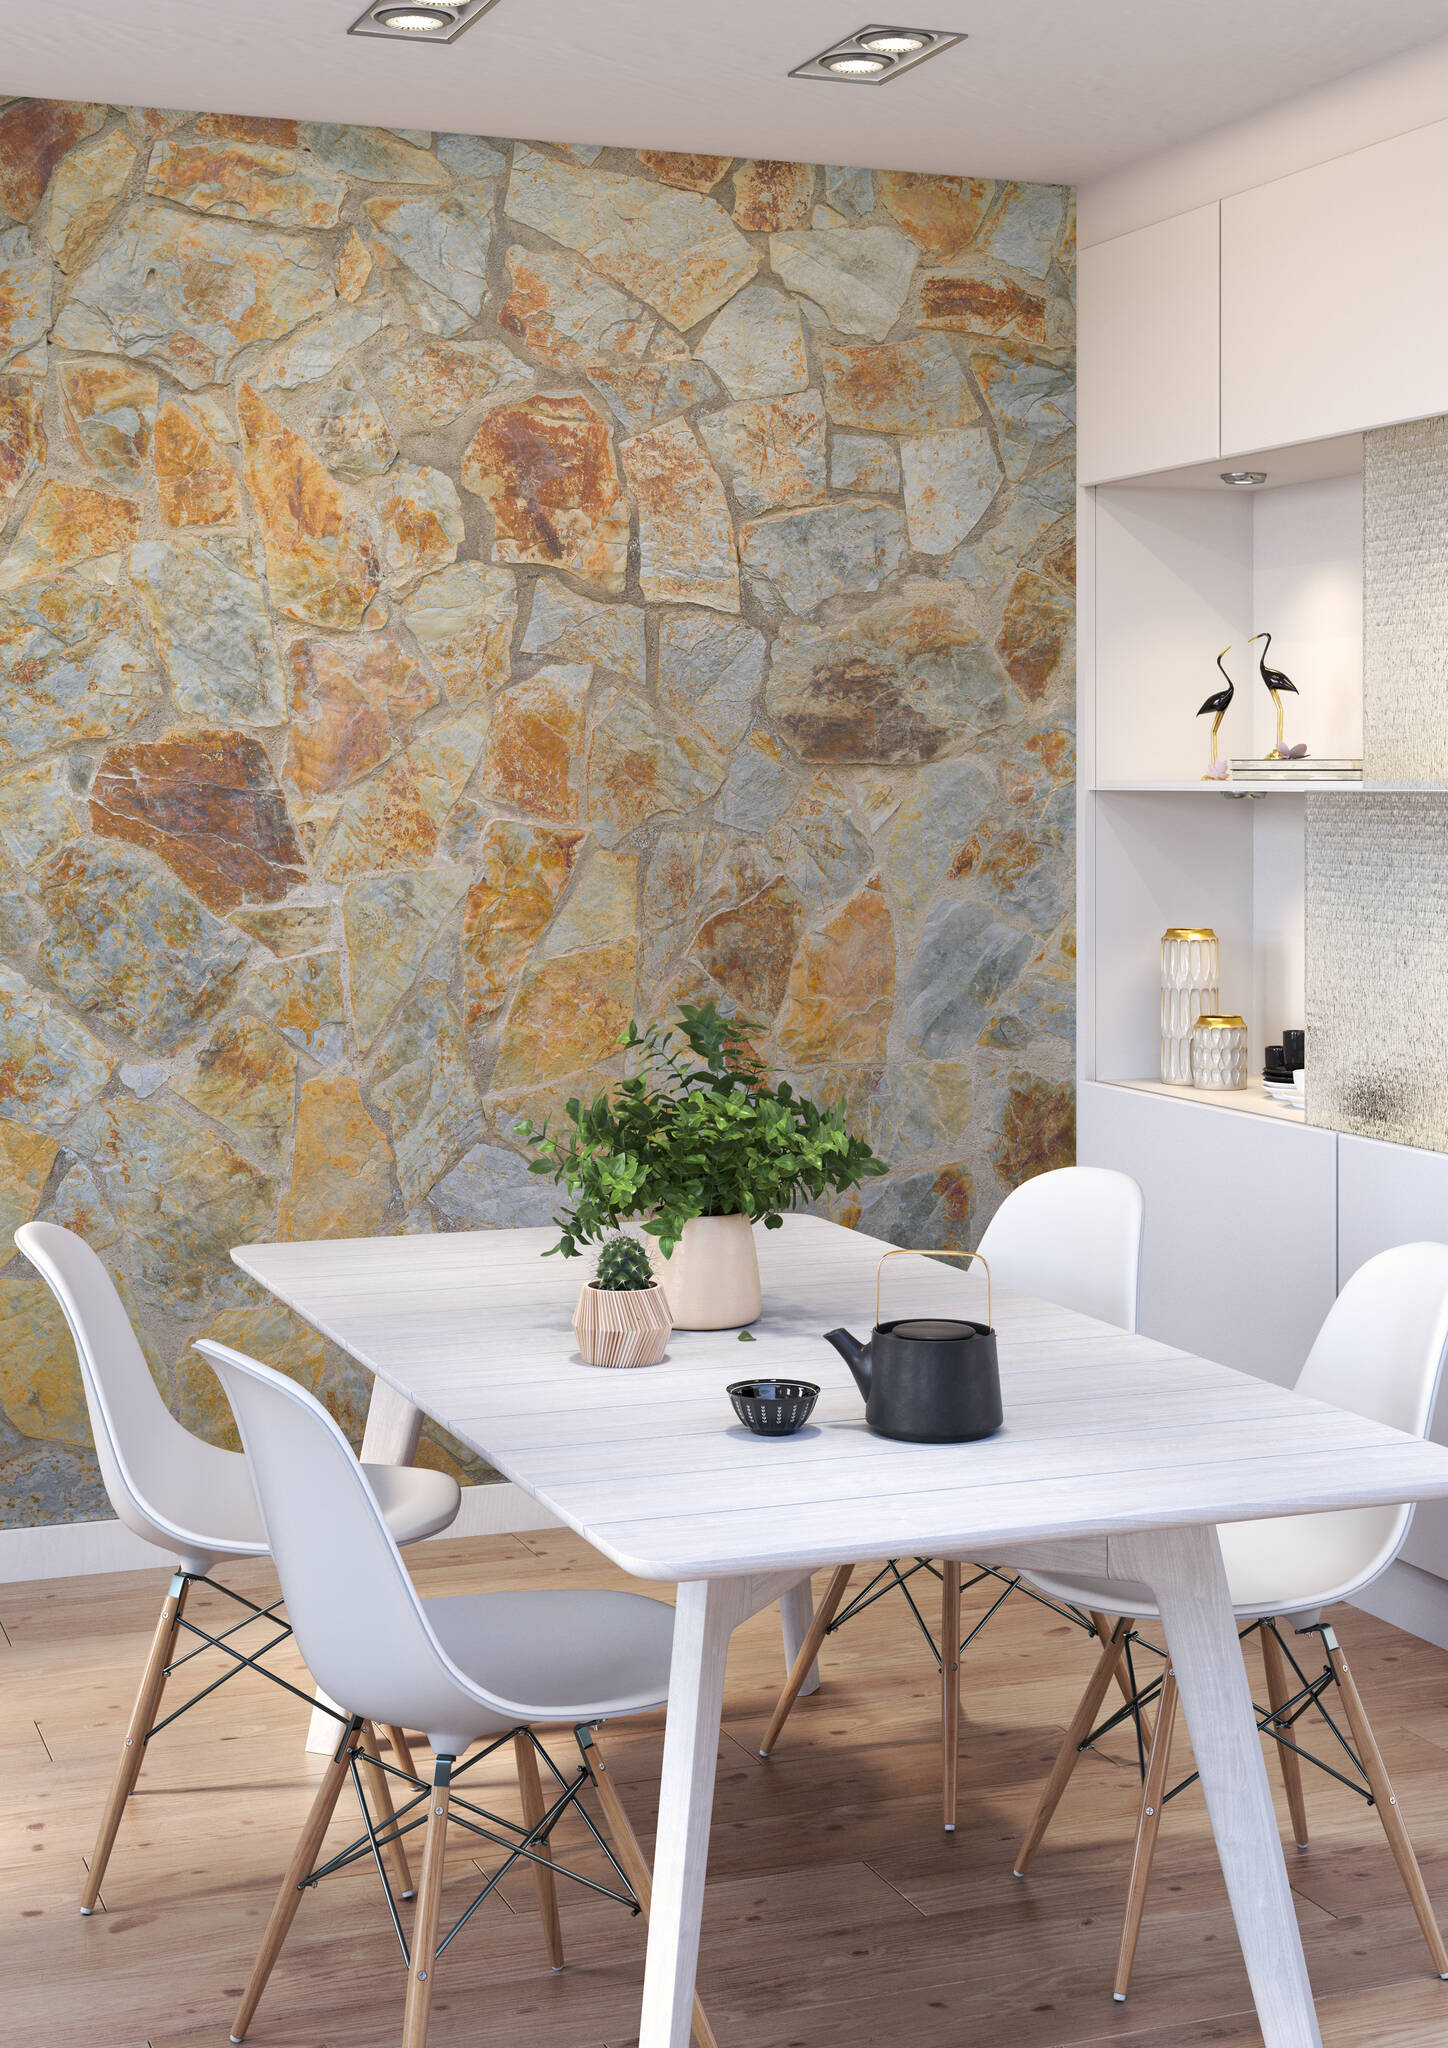 Esszimmer mit Fototapete - Naturstein-Mosaik schafft mediterranes Flair und die Braun- und Grautöne eine kühlende Atmosphäre